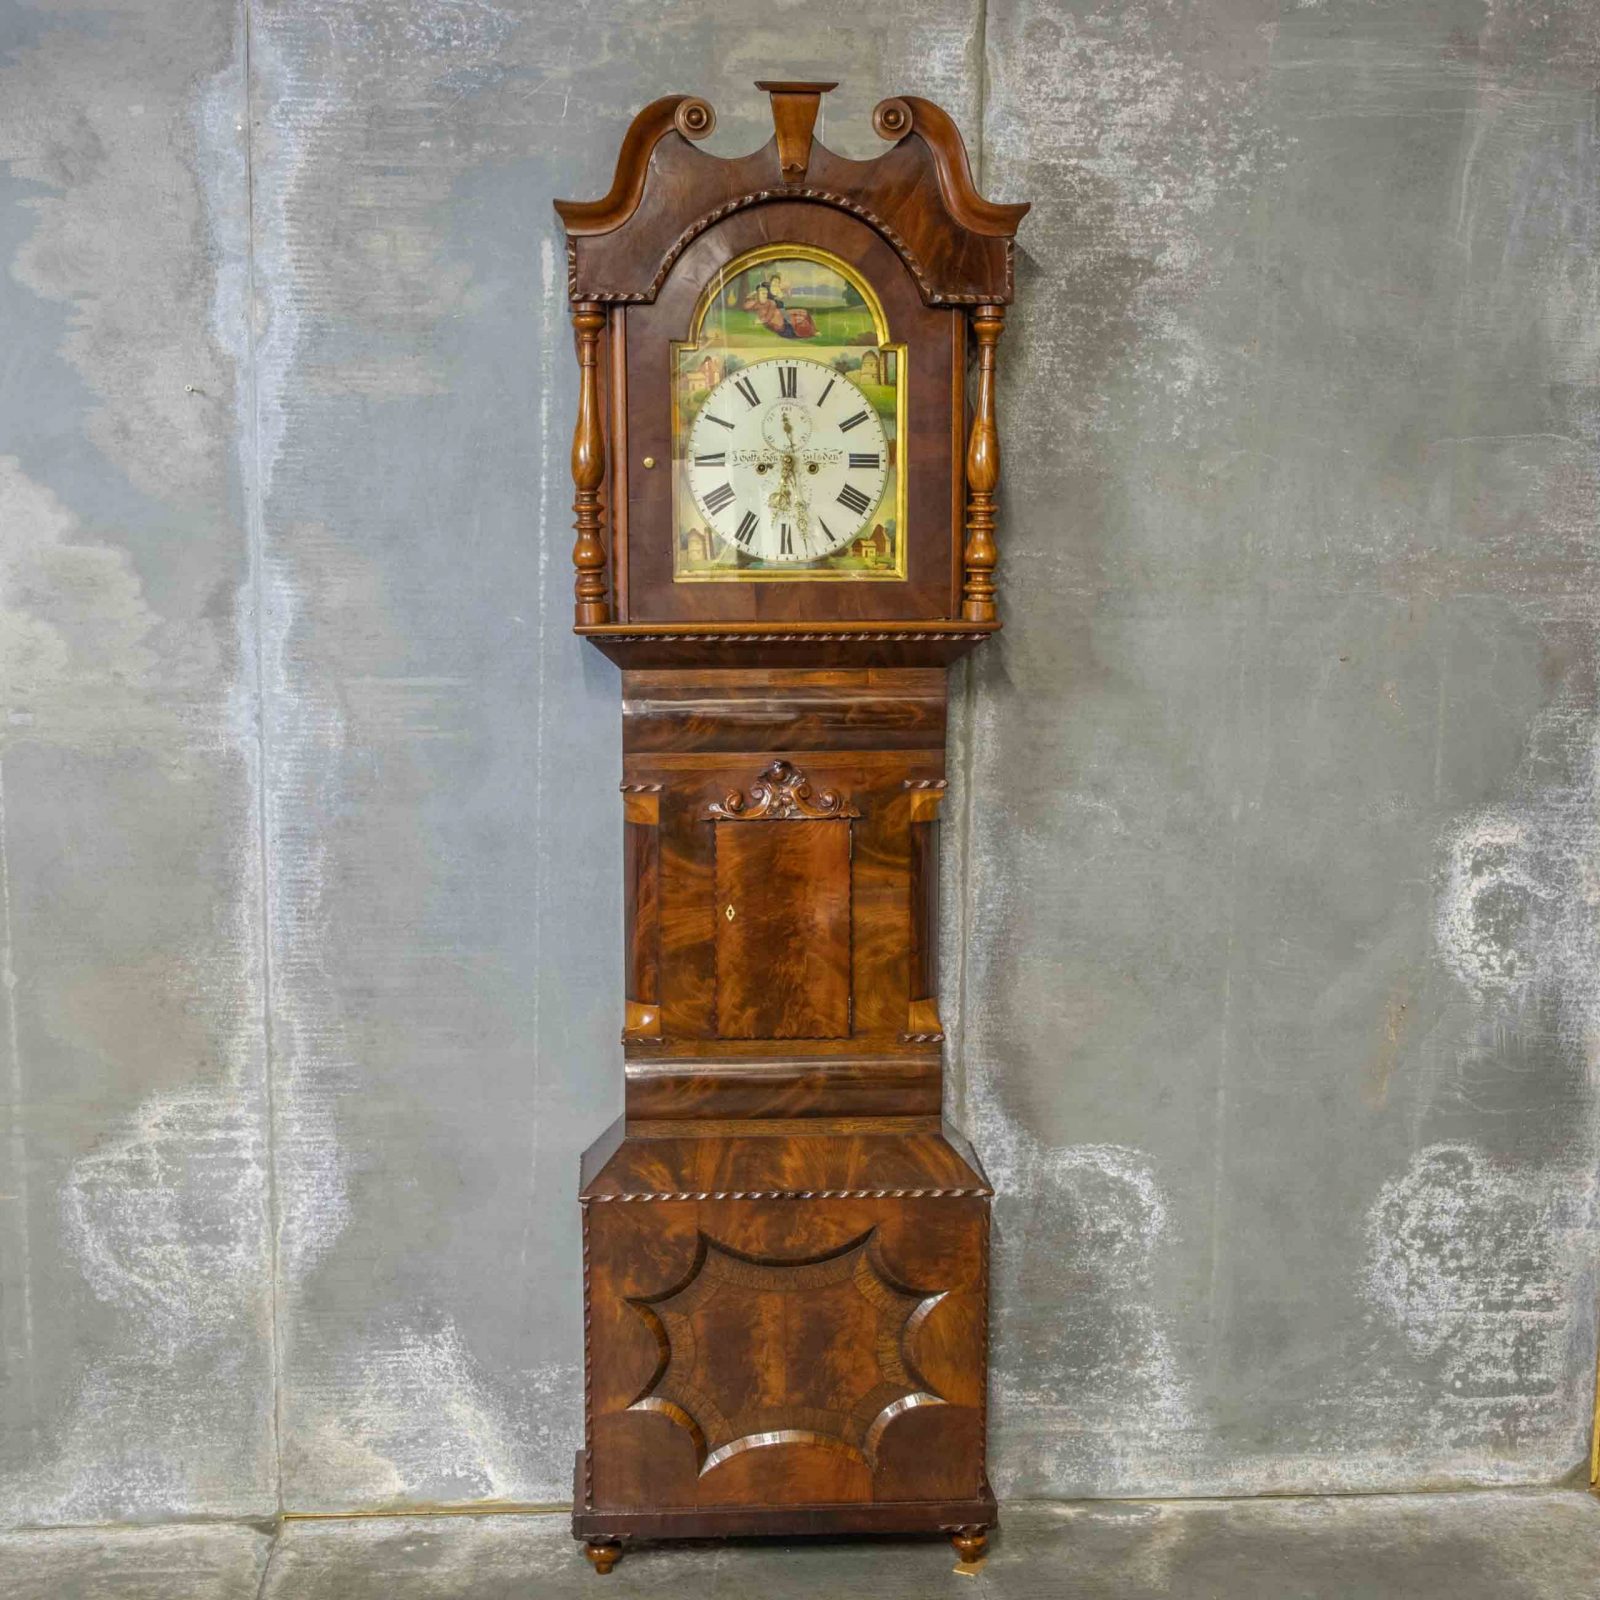 Mahogany Long Case Clock